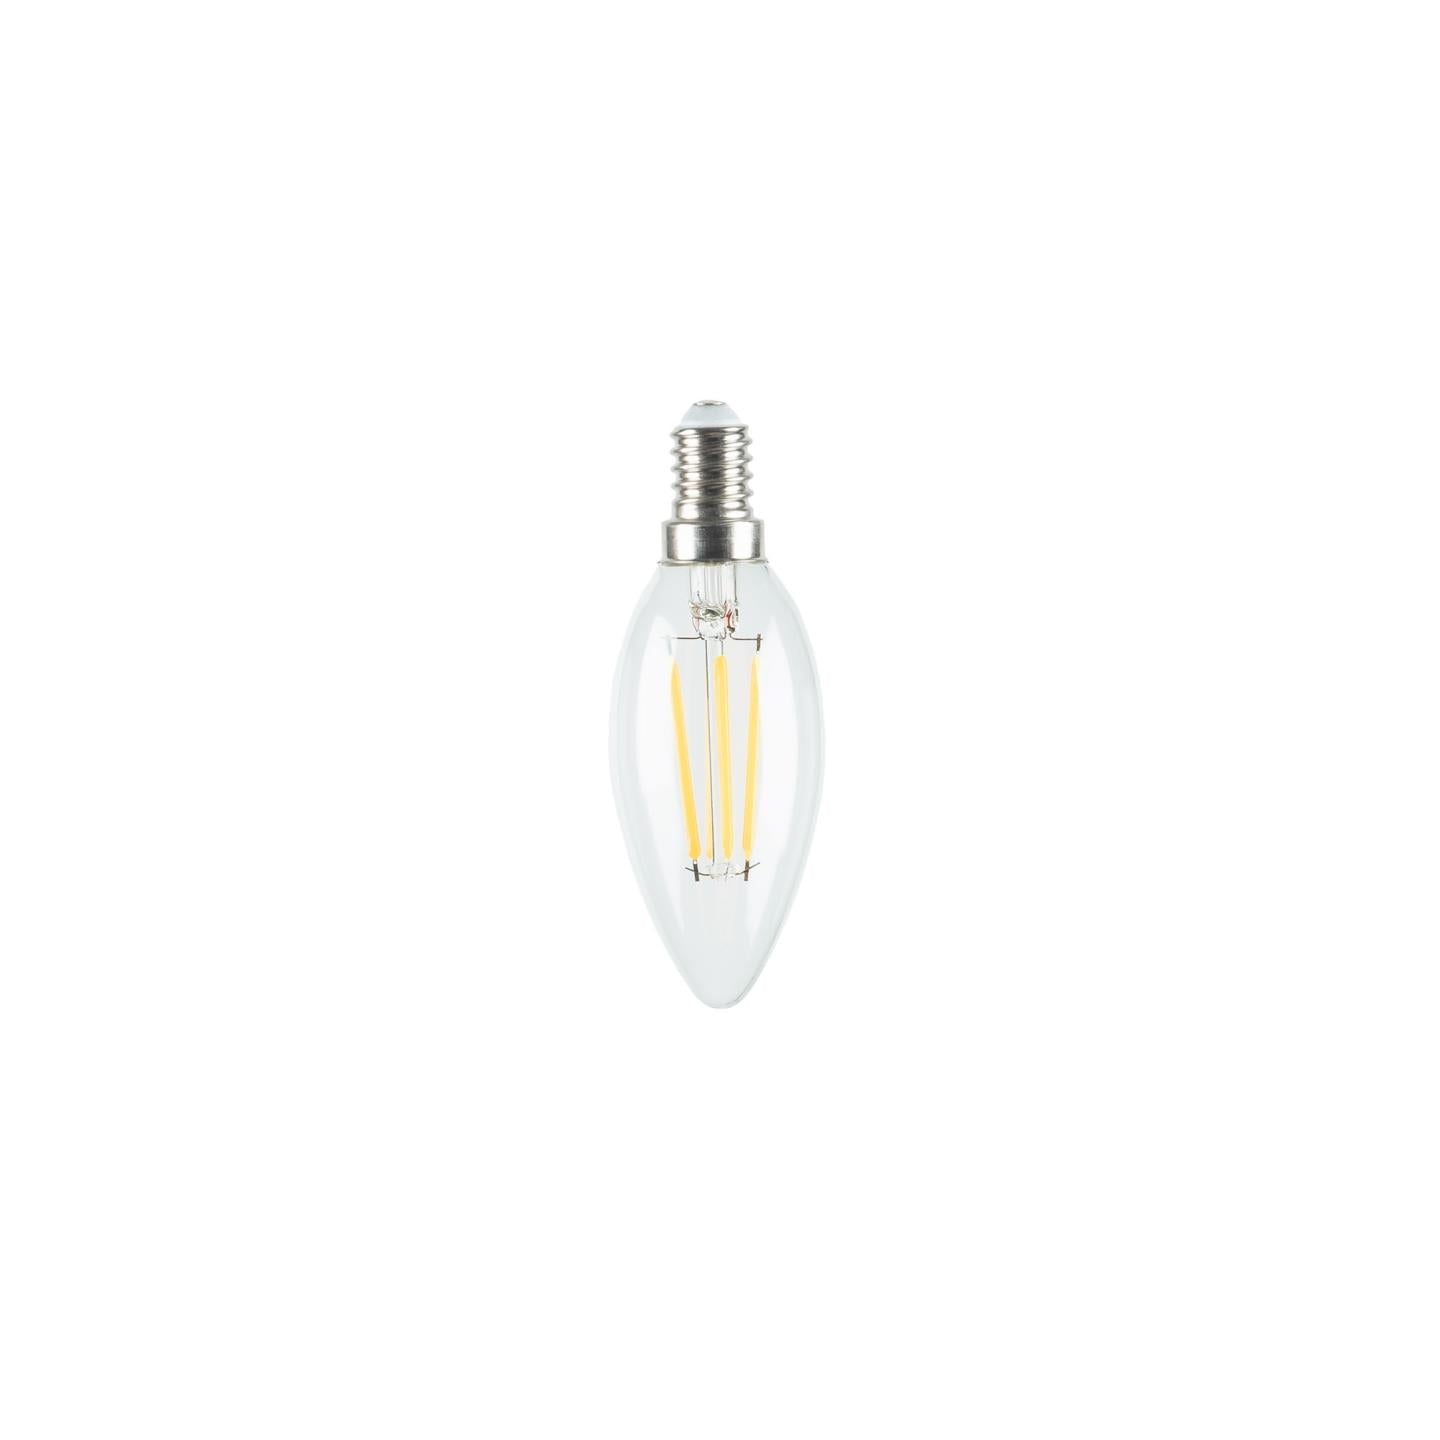 Bulb LED Bulb E14 of 4W and 35 mm warm light